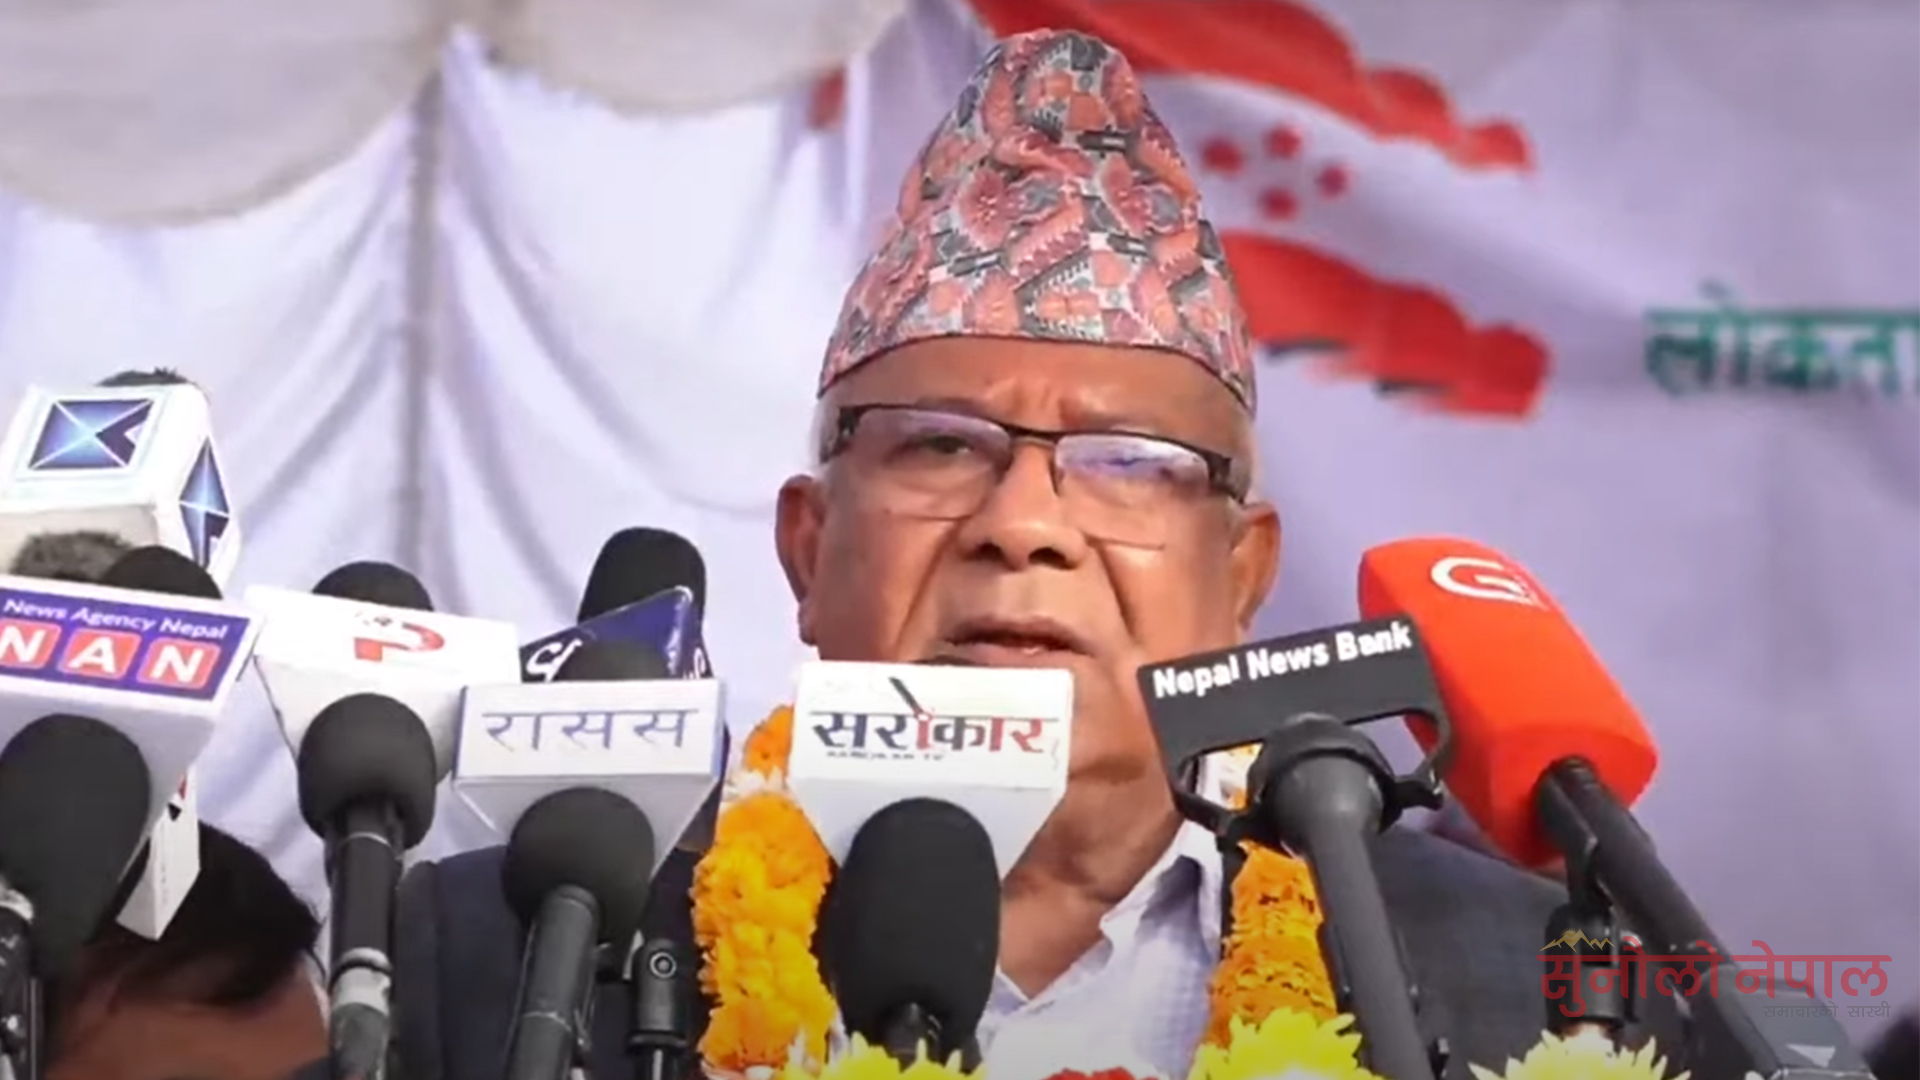 २०६४ र २०७२ मै राष्ट्रपति पद अस्वीकार गरेको हुँ : माधव नेपाल